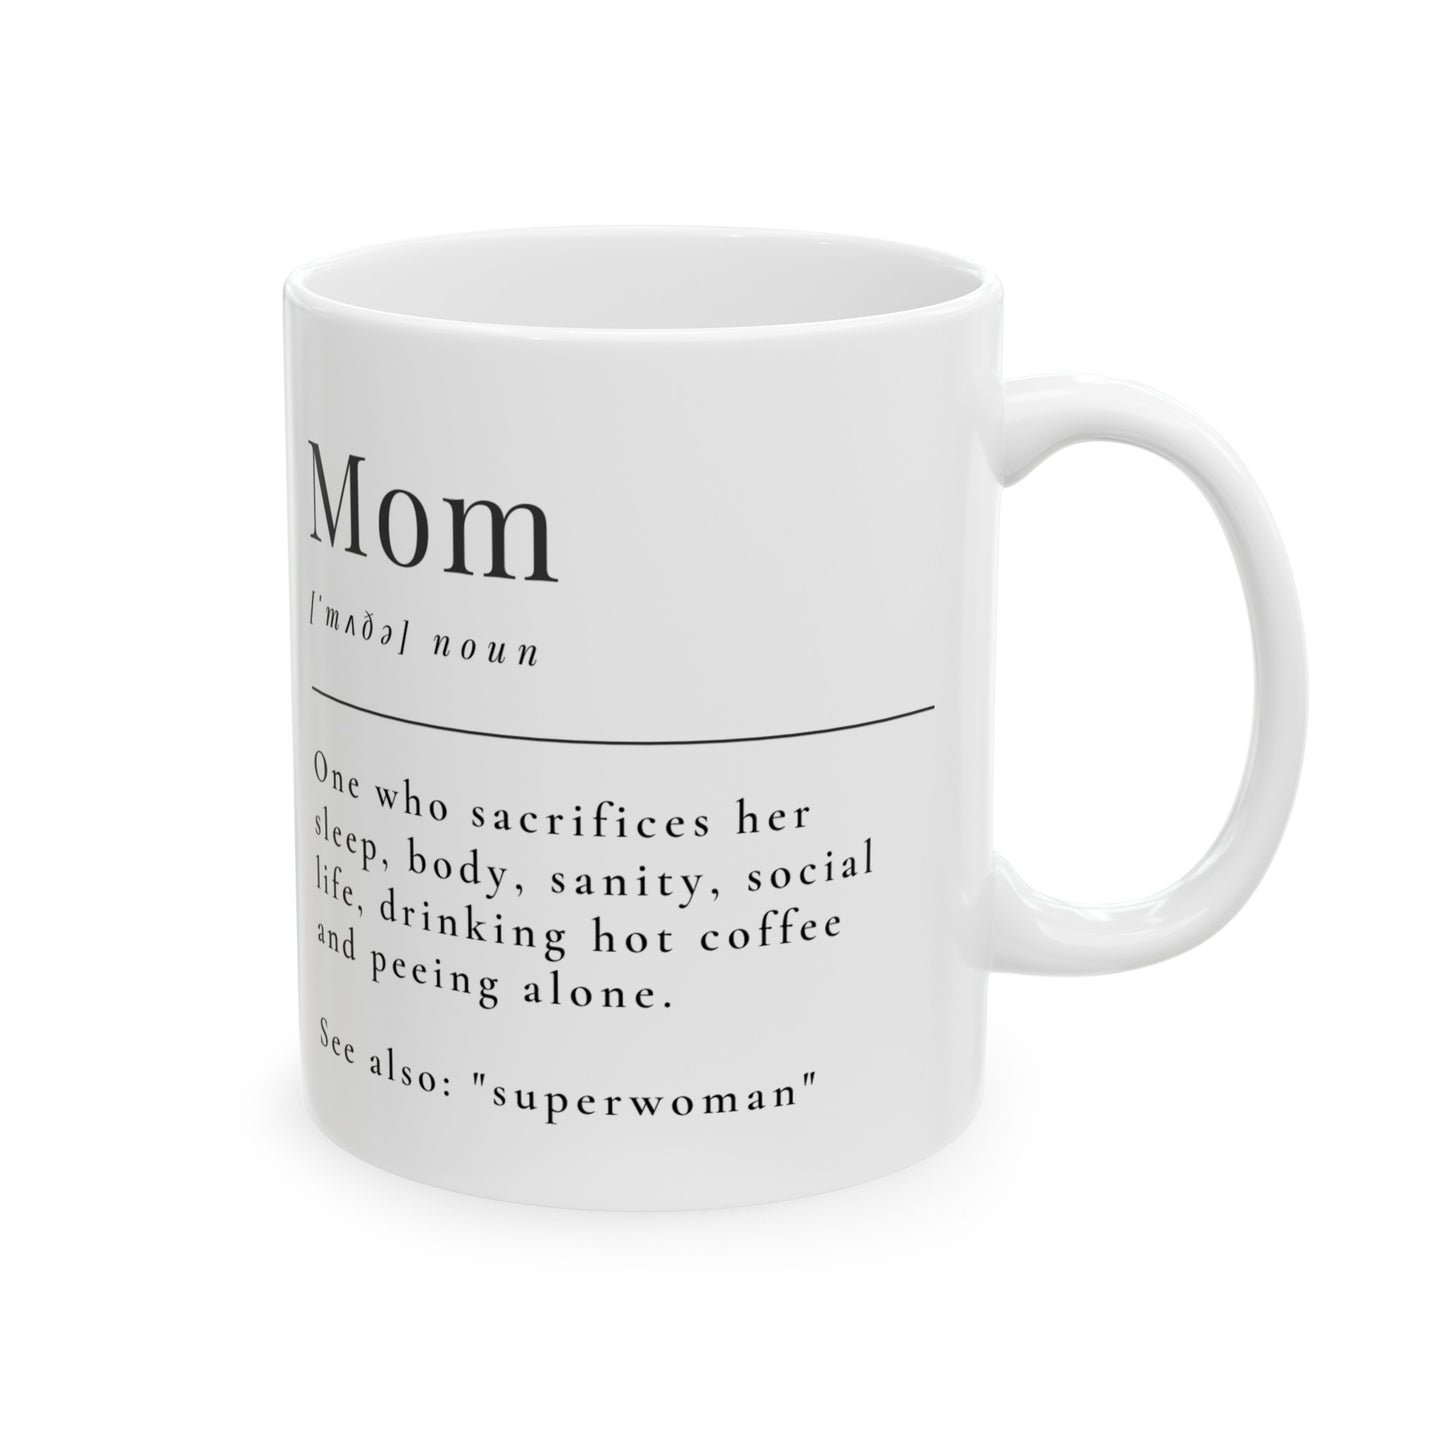 Mom -Superhero Ceramic Mug 11oz